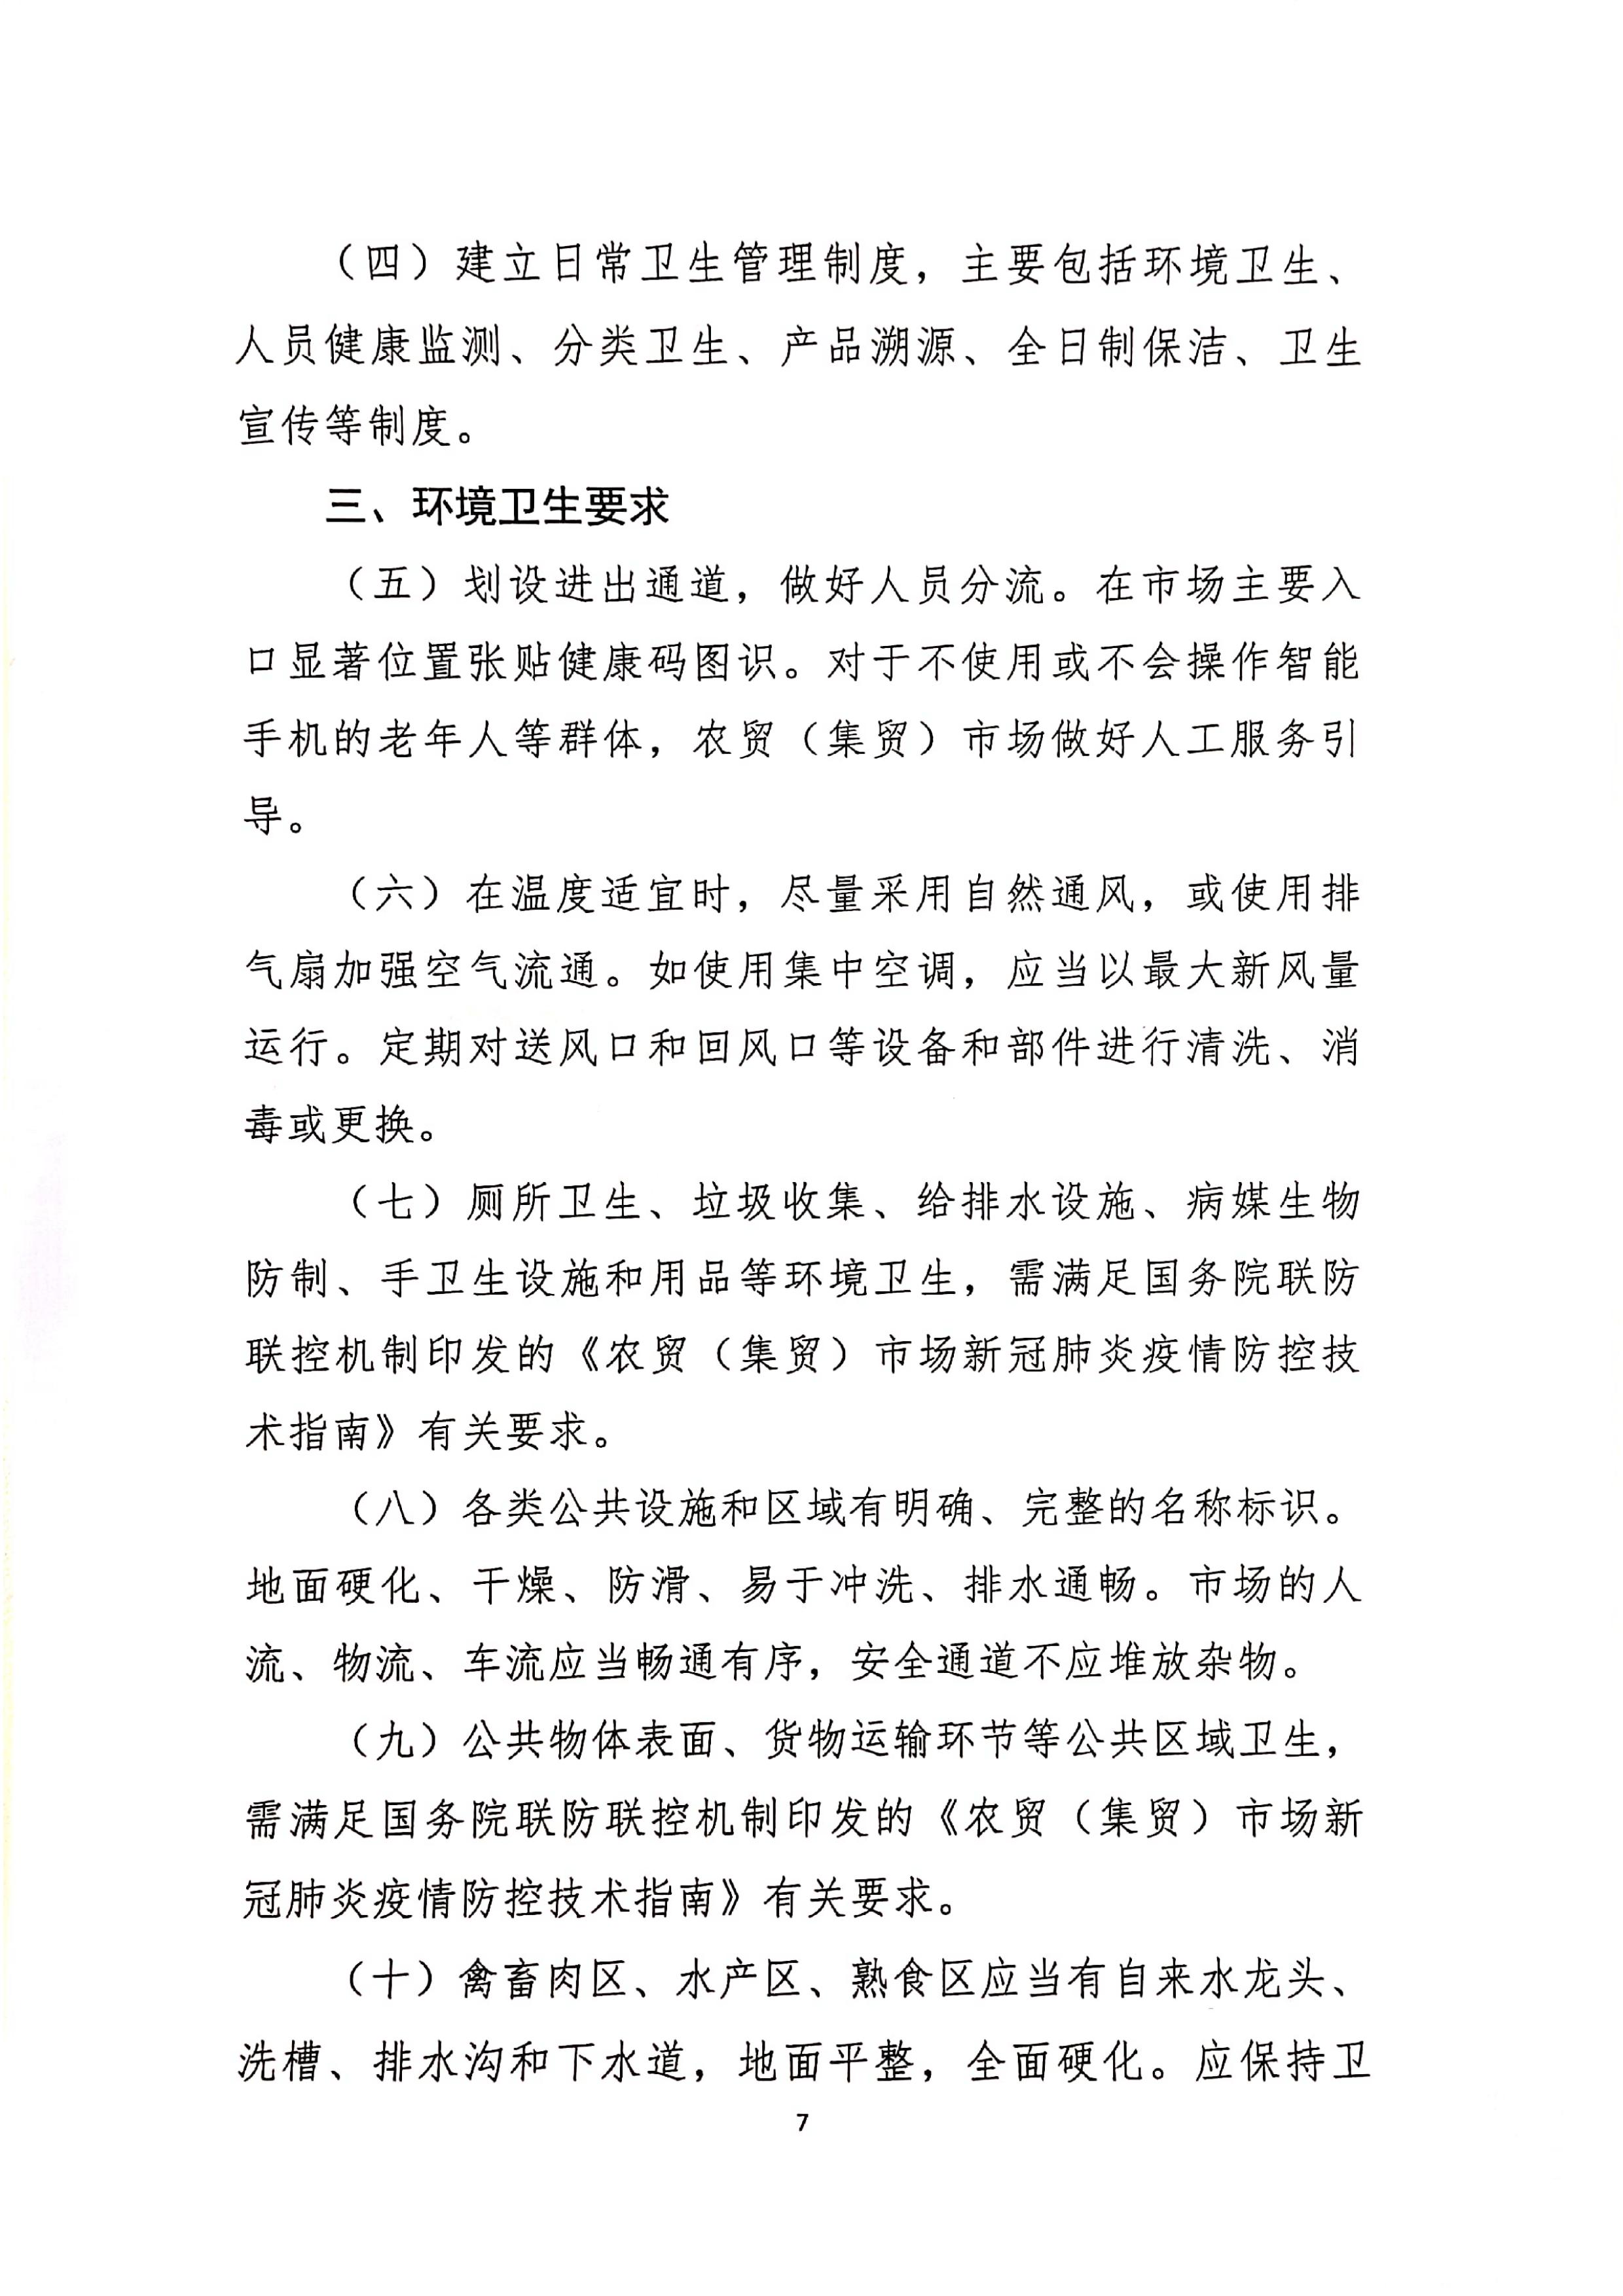 发文4号-关于印发《上海市商场、超市疫情防控技术指南》等4个指南的通知_07.jpg